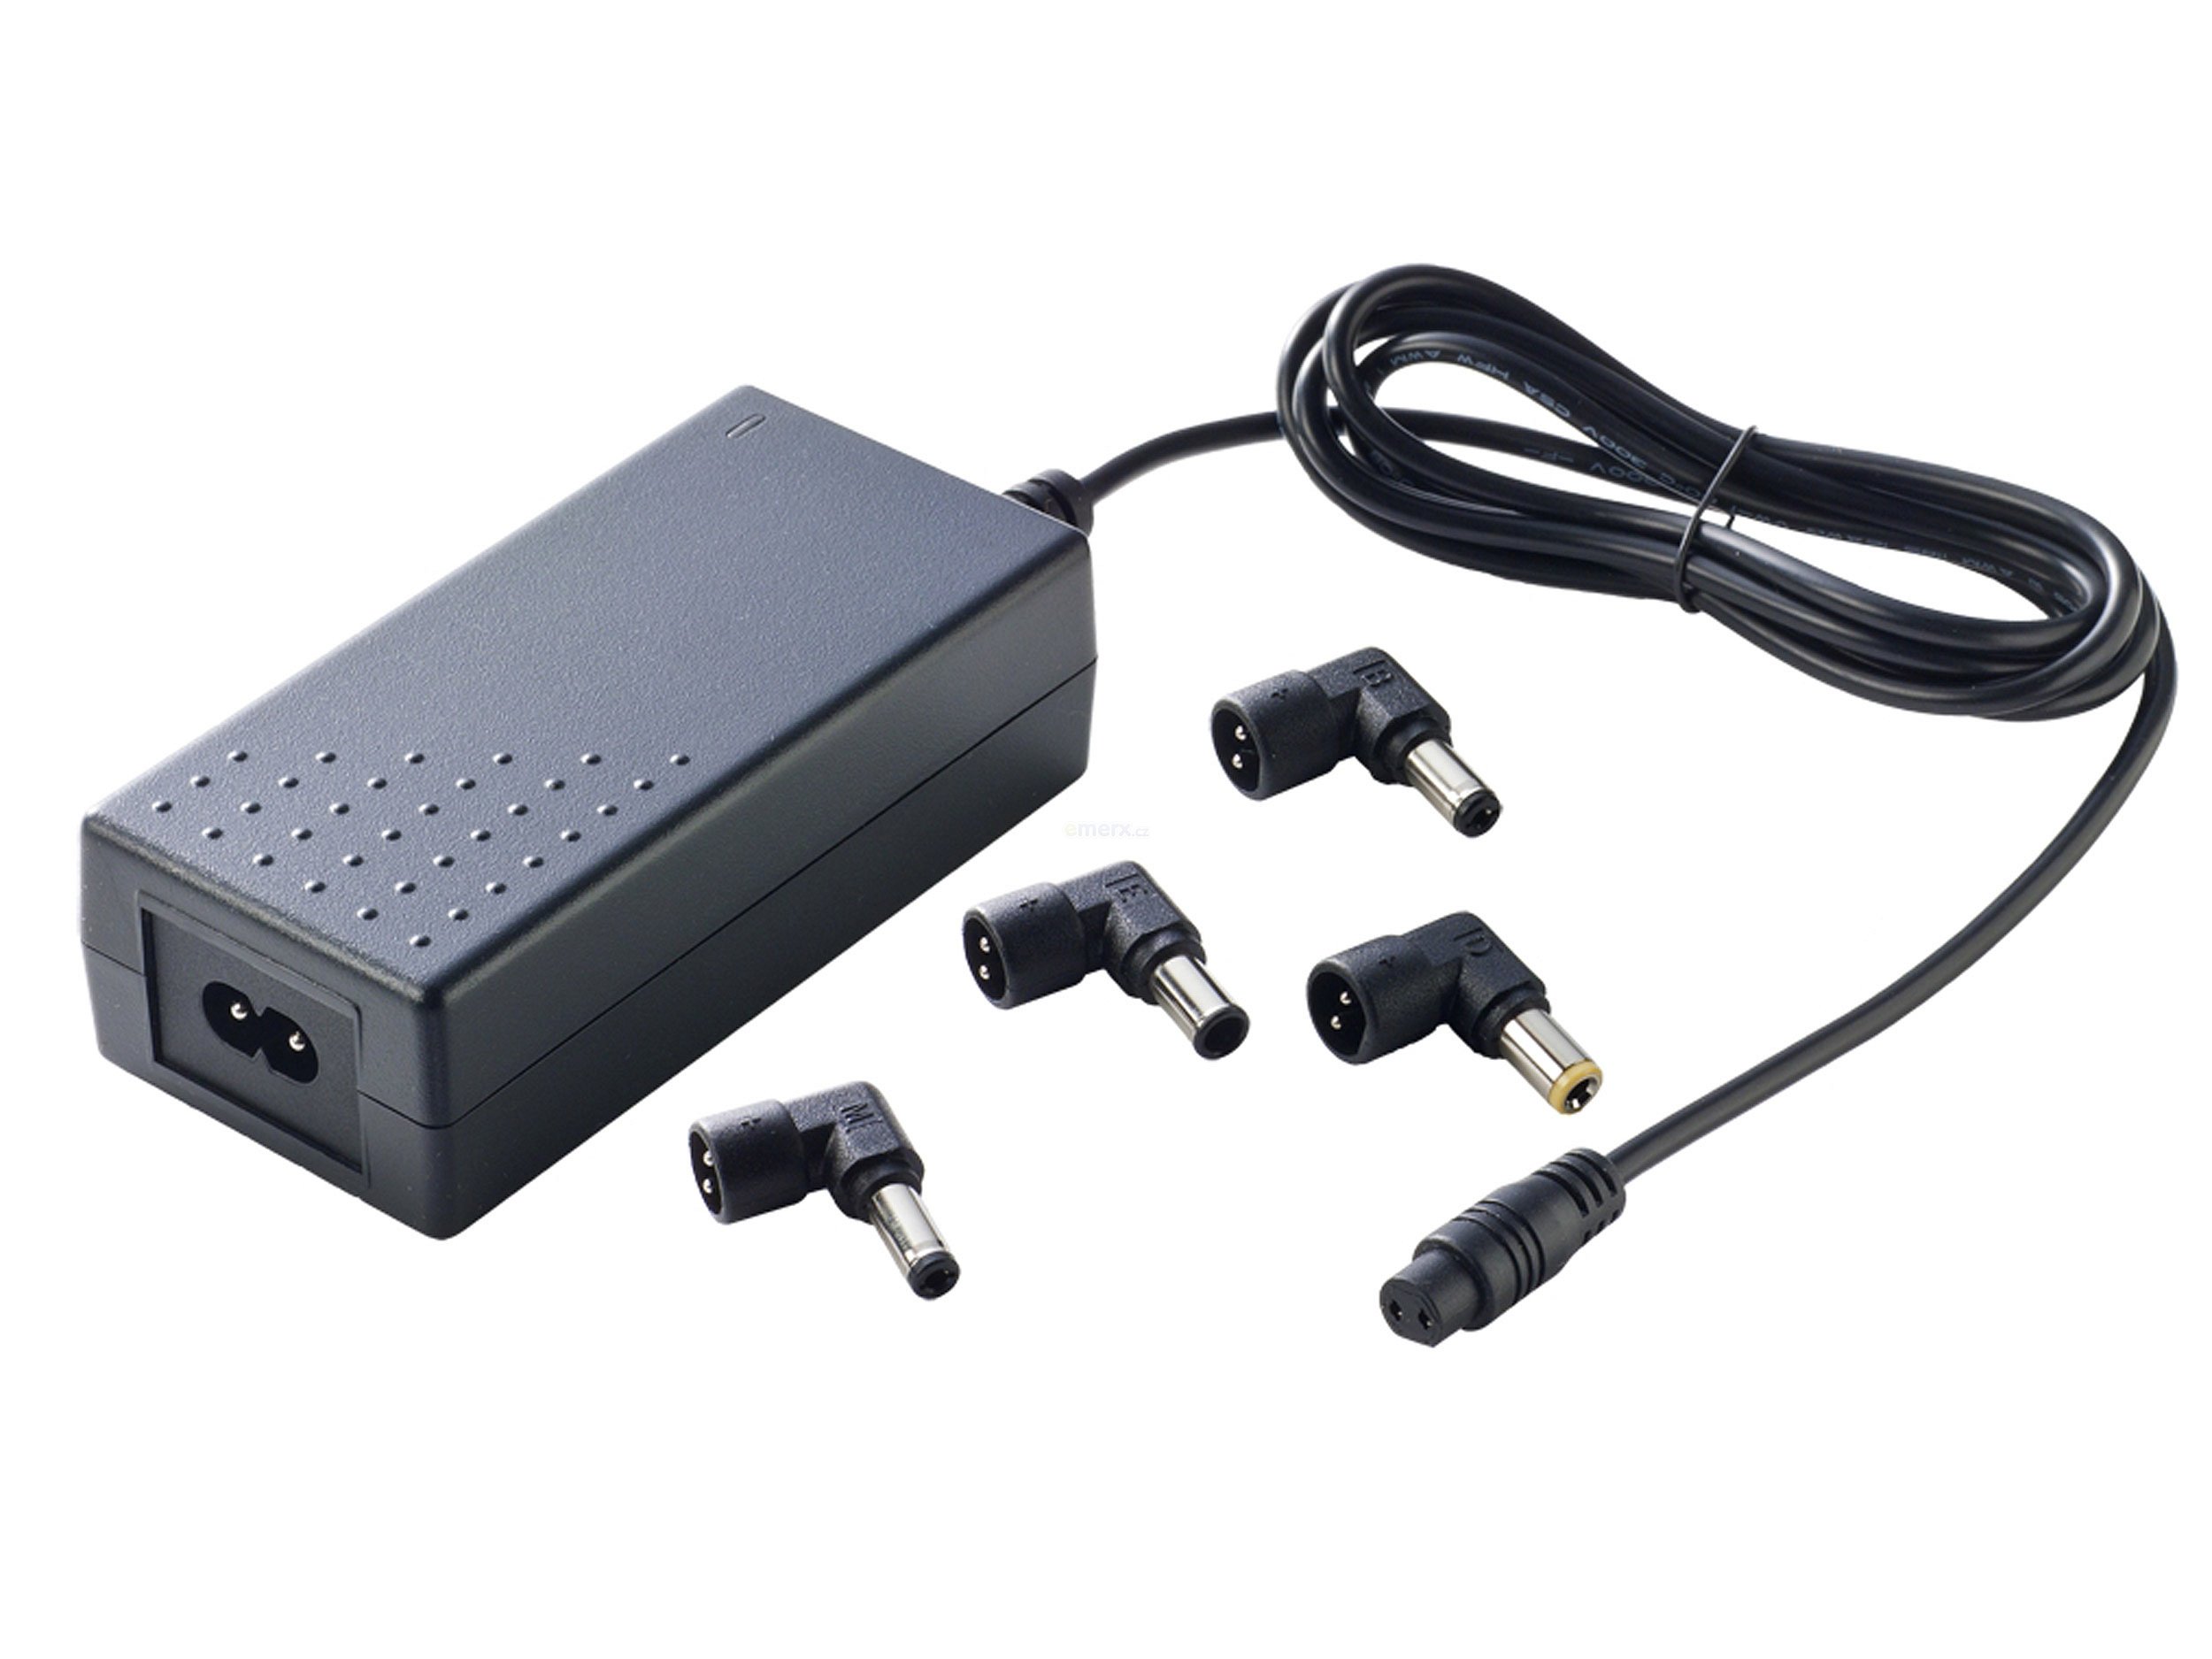 Napájecí adaptér pro notebook 12V/5400mA sada výměnných konektorů, T2 (1443-6512-T2 Uni)